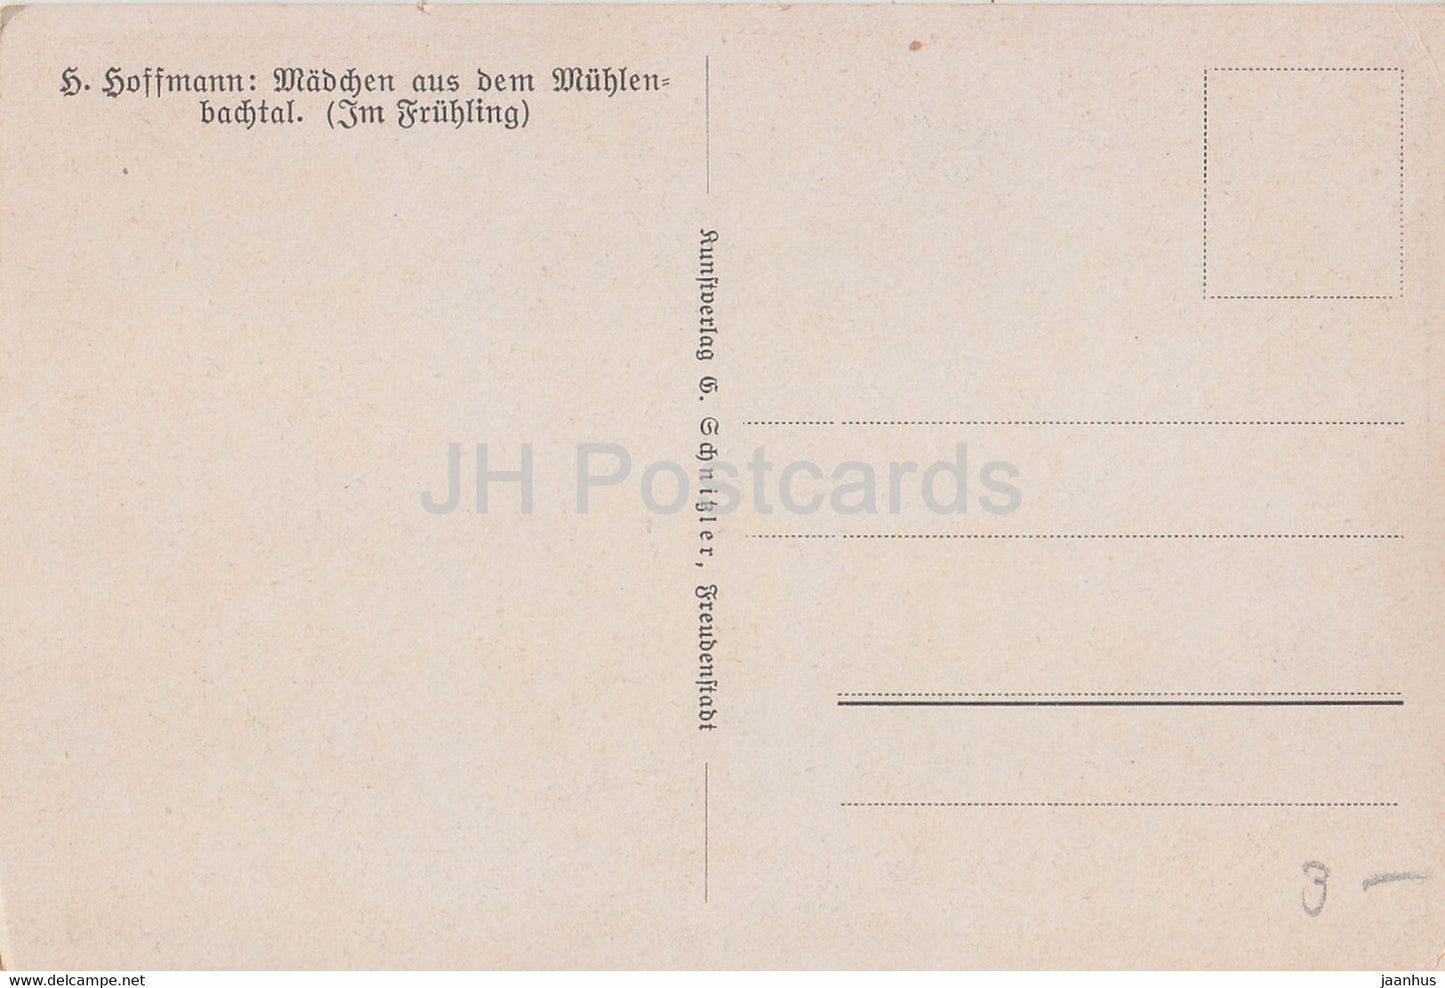 Mädchen aus dem Mühlenbachtal - Trachten - Huhn - Hund - Illustration von H. Hoffmann - alte Postkarte - unbenutzt